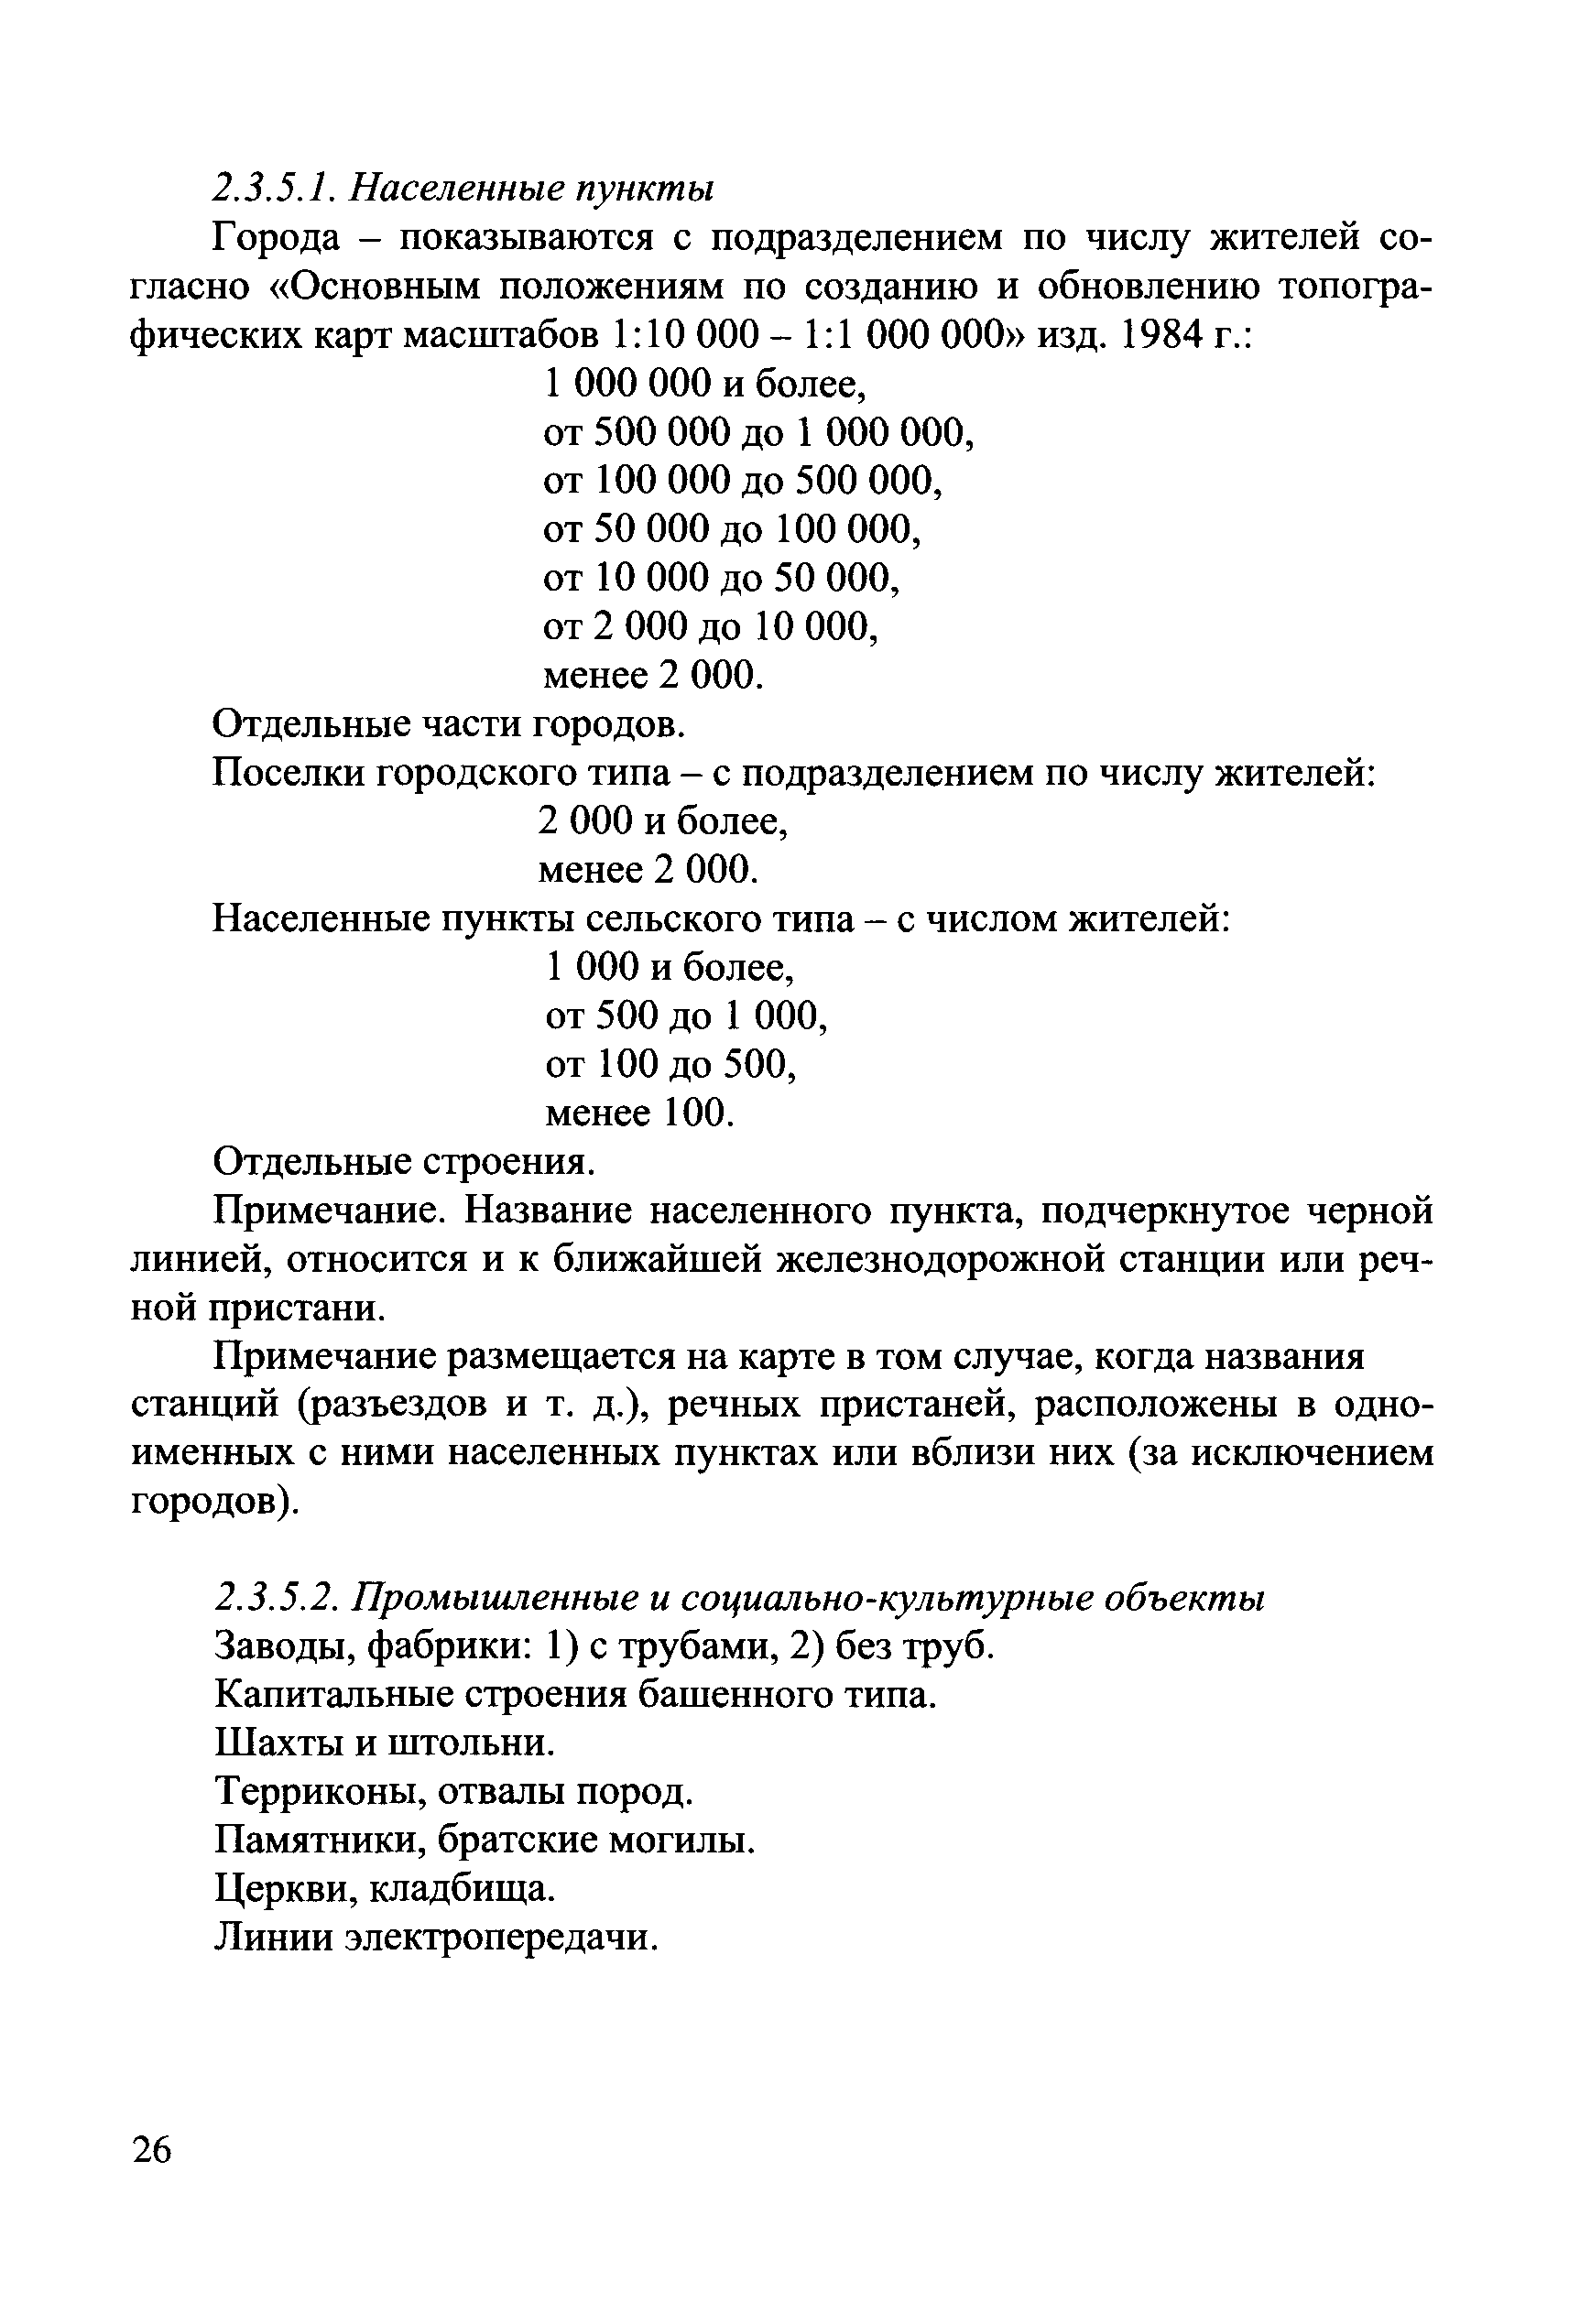 ГКИНП (ОНТА) 14-257-02